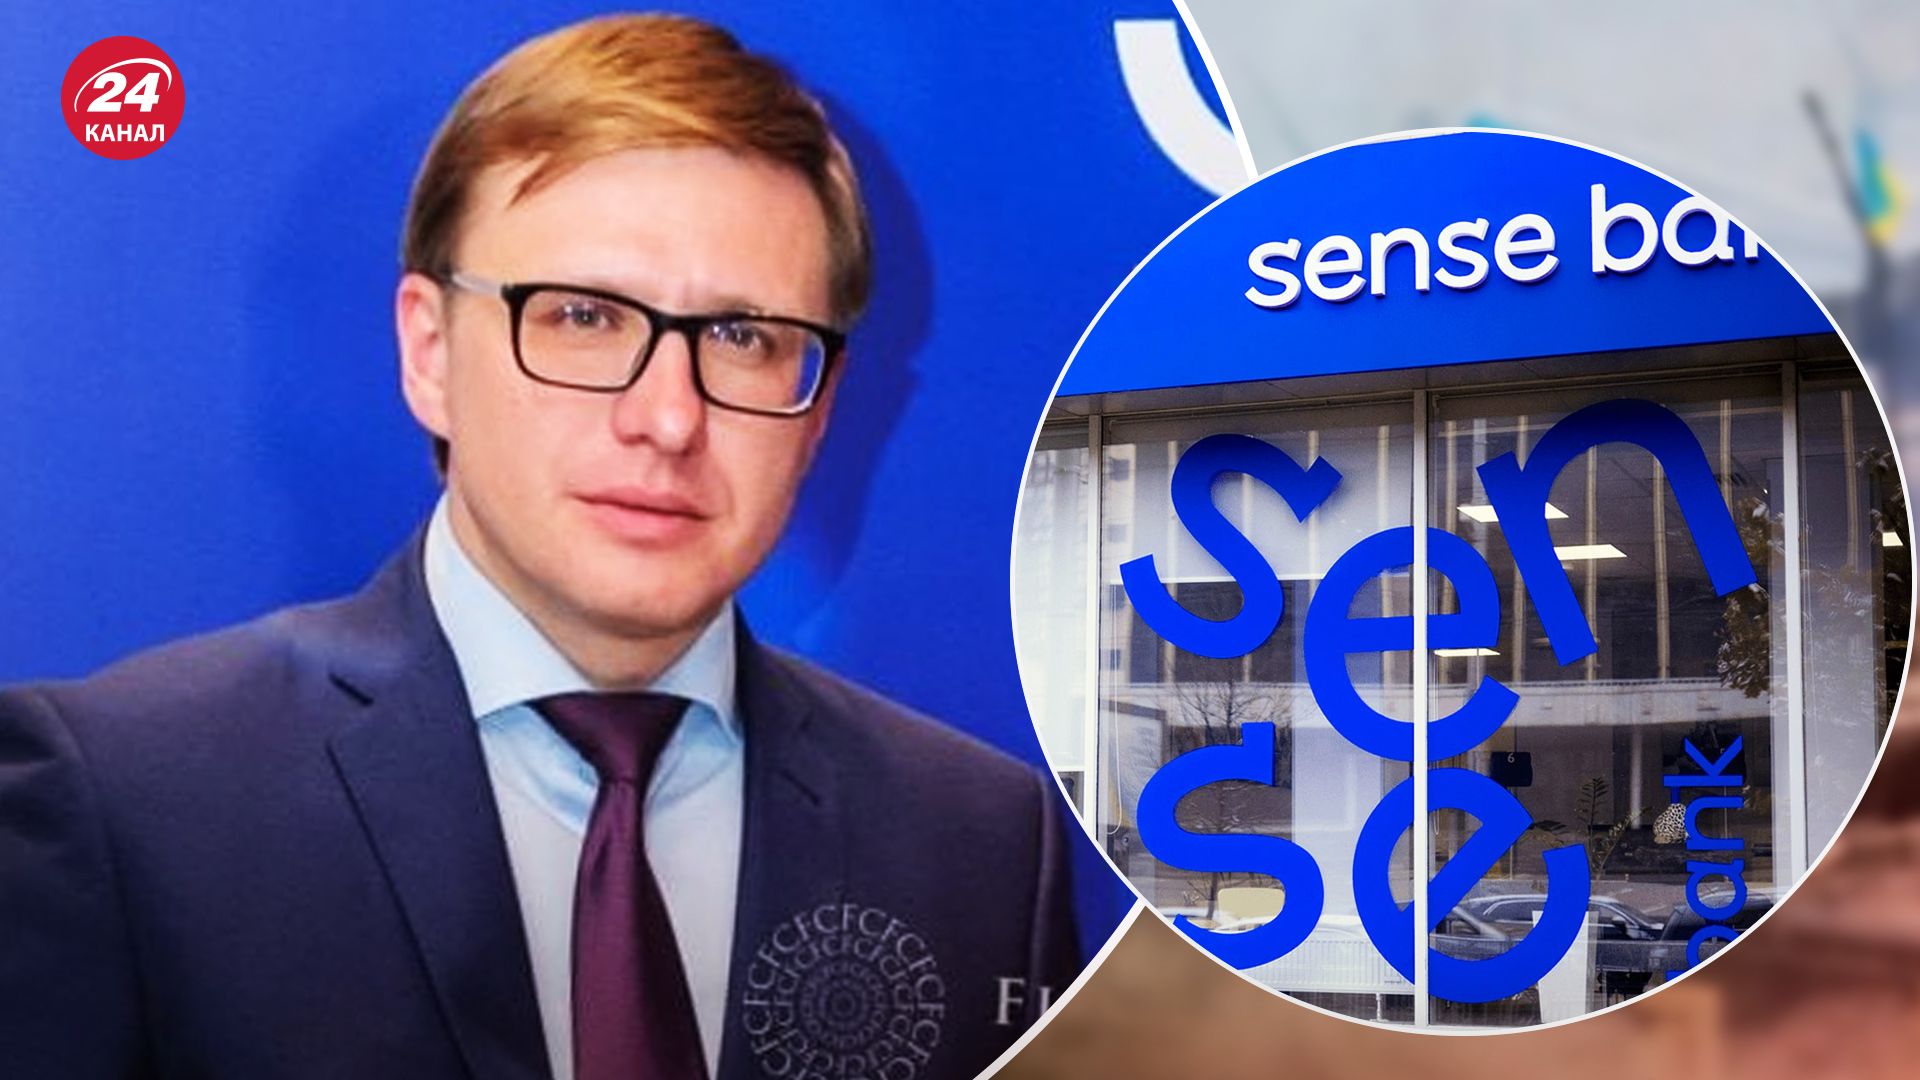 Дмитрий Кузьмин больше не руководит "Сенс банком"